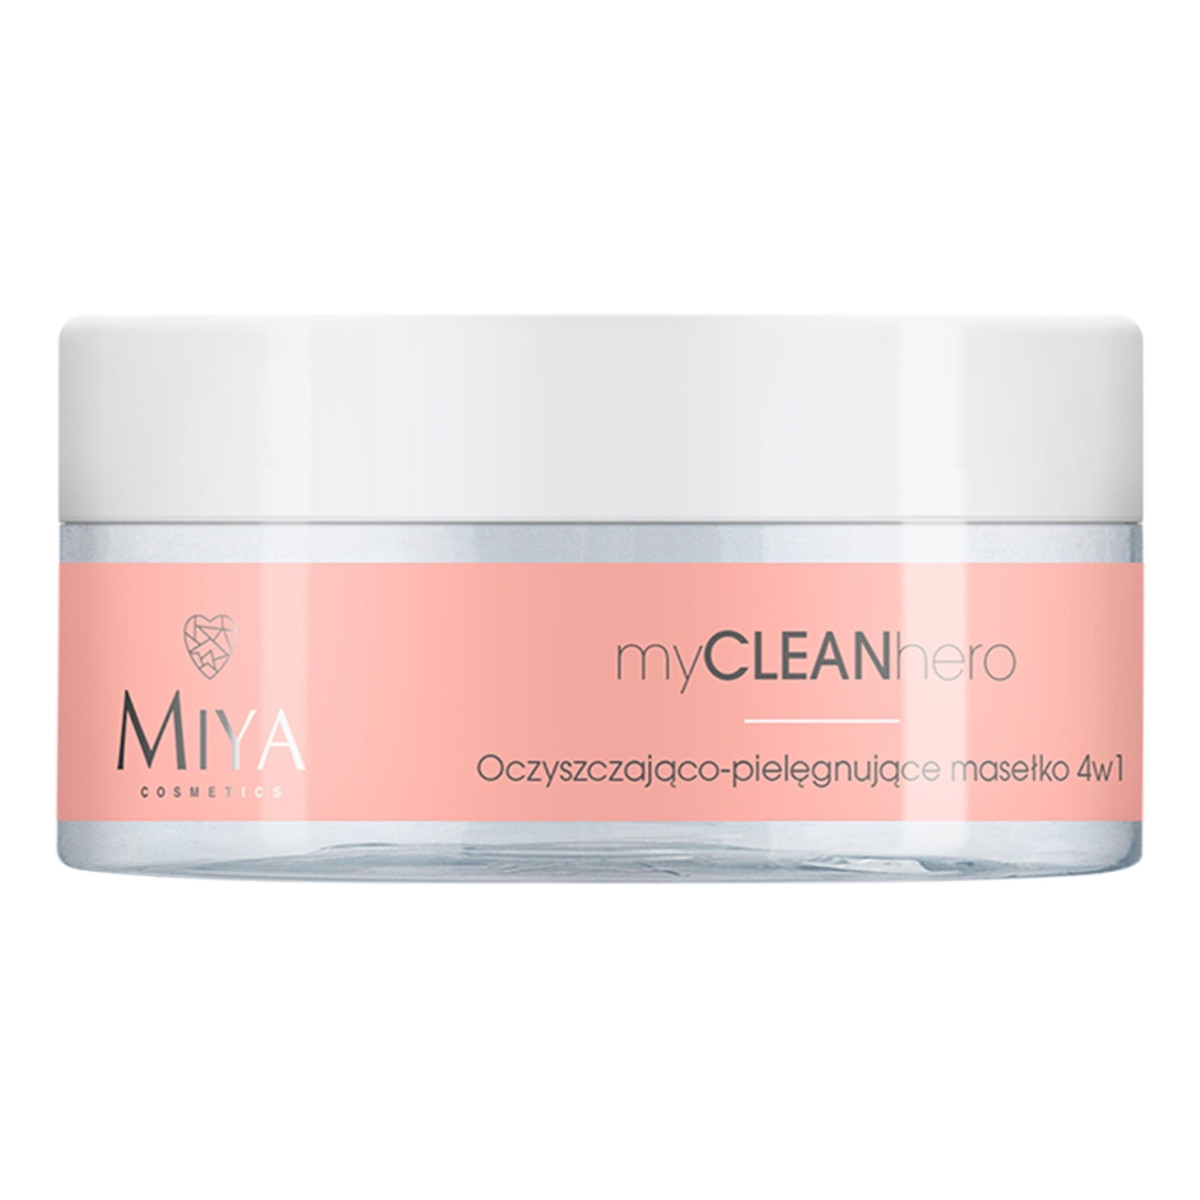 Miya Cosmetics Mycleanhero oczyszczająco-pielęgnujące masełko 4w1 70g